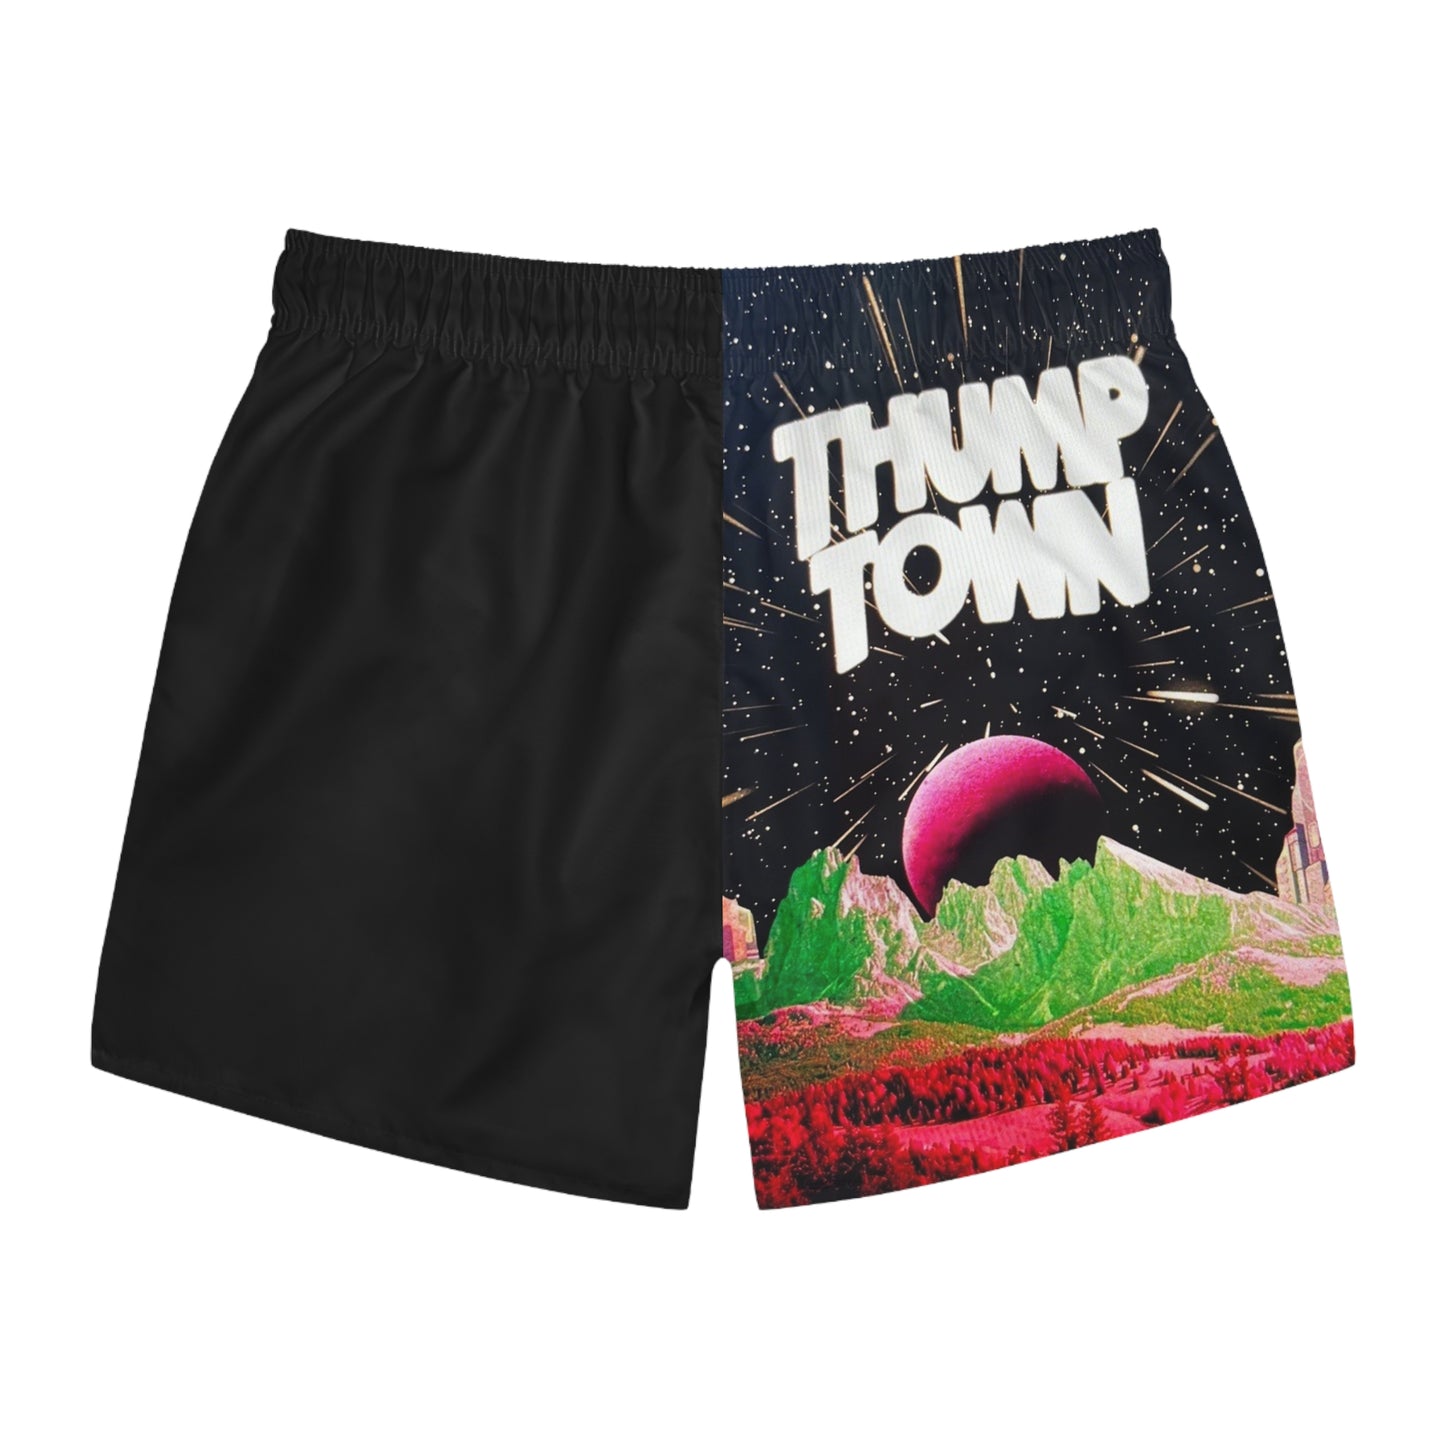 ThumpTown Swim Shorts